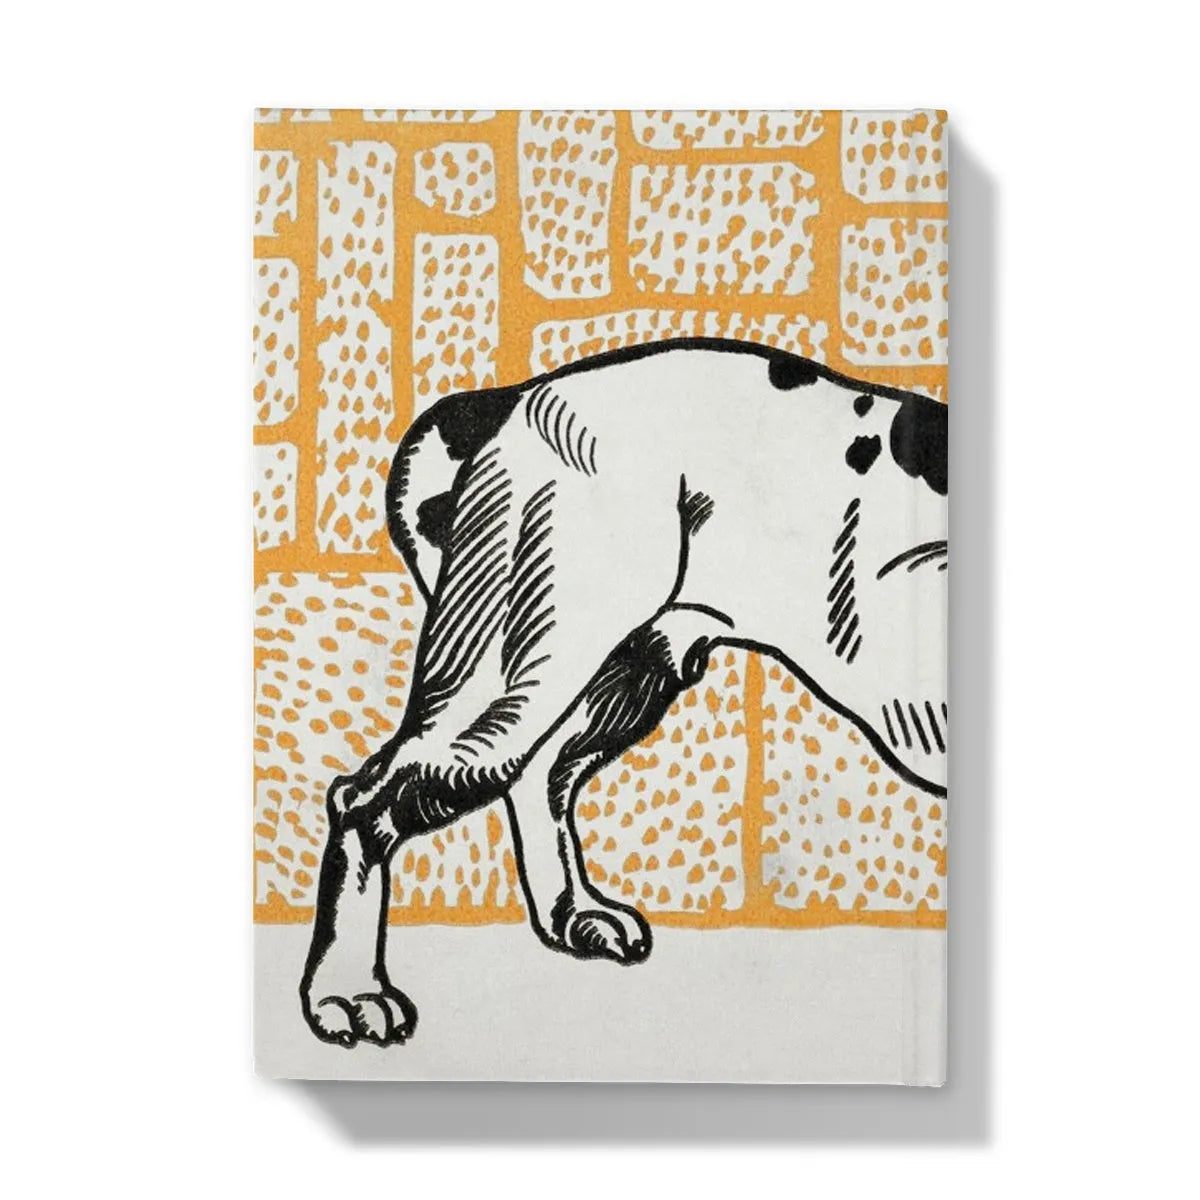 Pitbull Terrier By Moriz Jung Hardback Journal - Notebooks & Notepads - Aesthetic Art